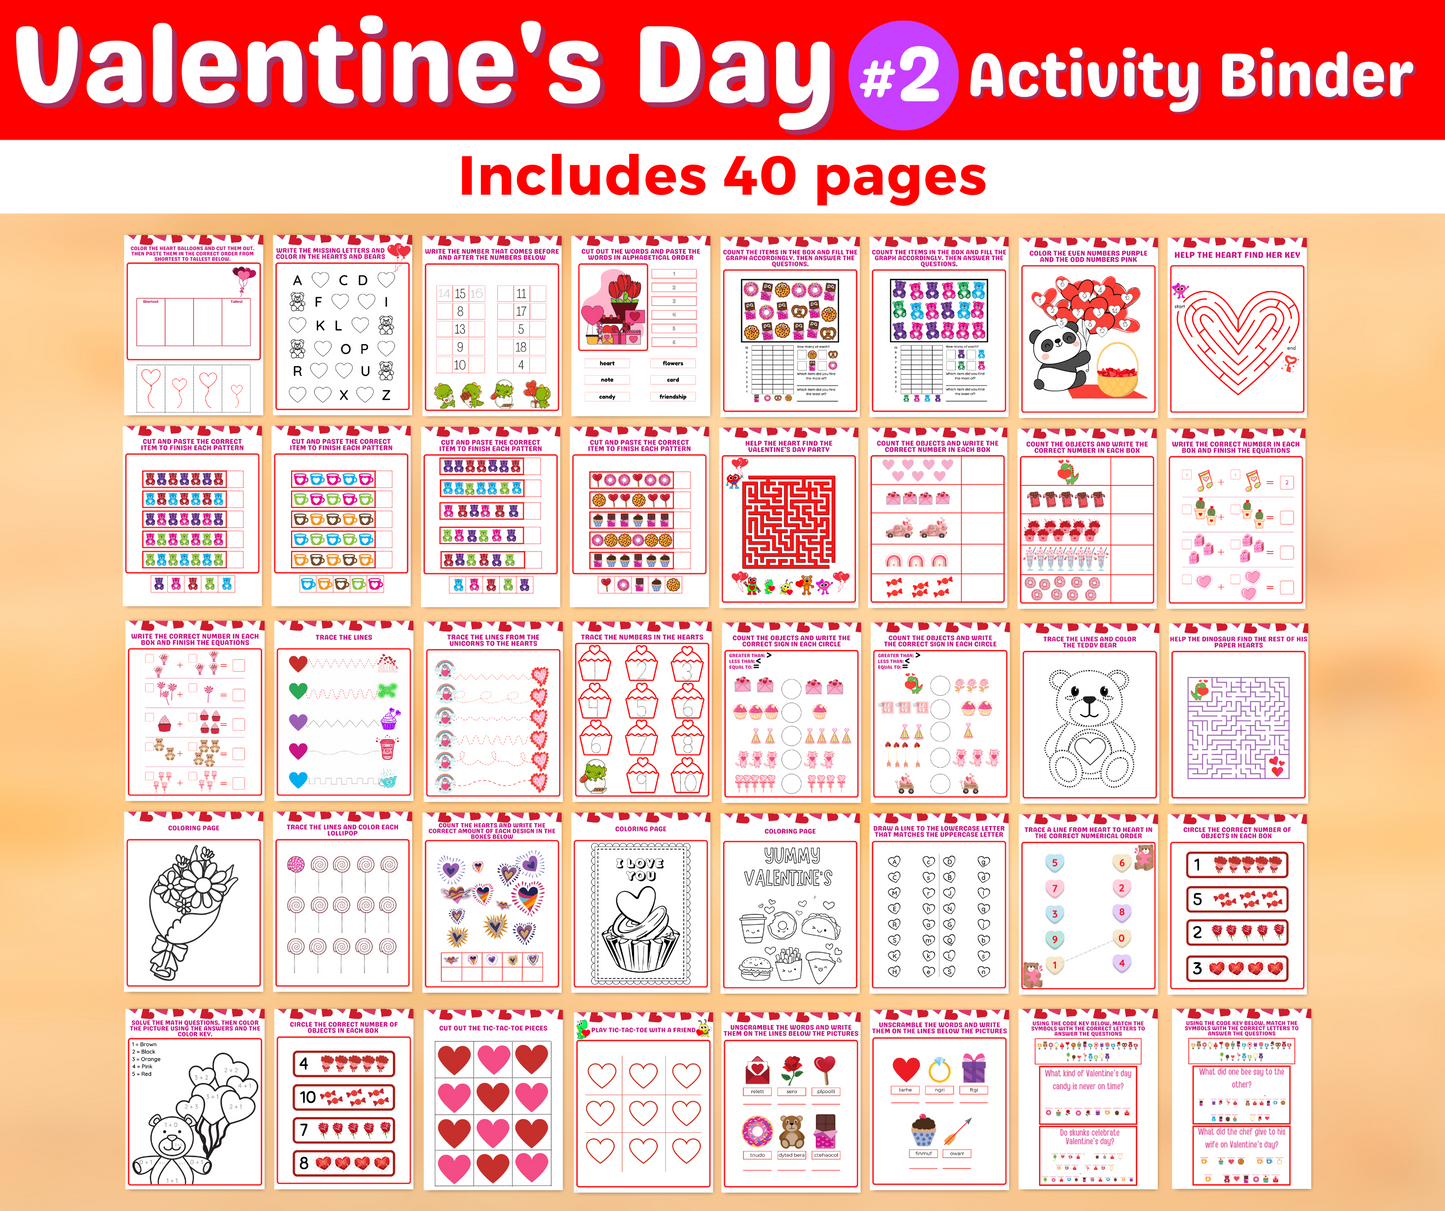 Valentine's Day #2 Activity Binder - Download